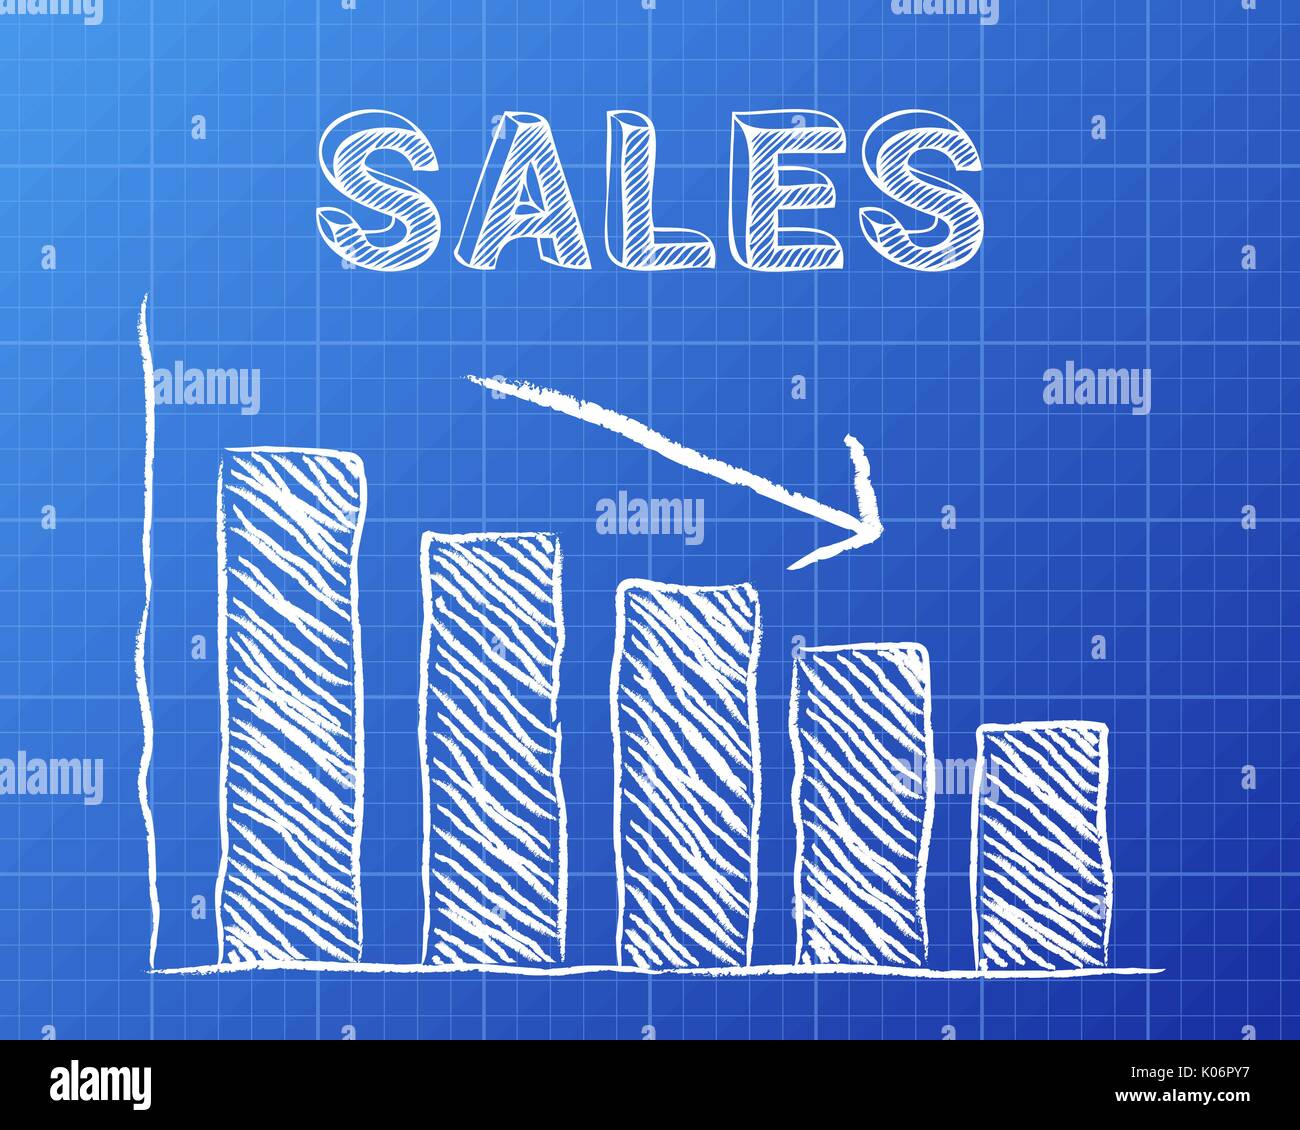 Abnehmende Grafik und Sales Wort auf blueprint Hintergrund Stock Vektor